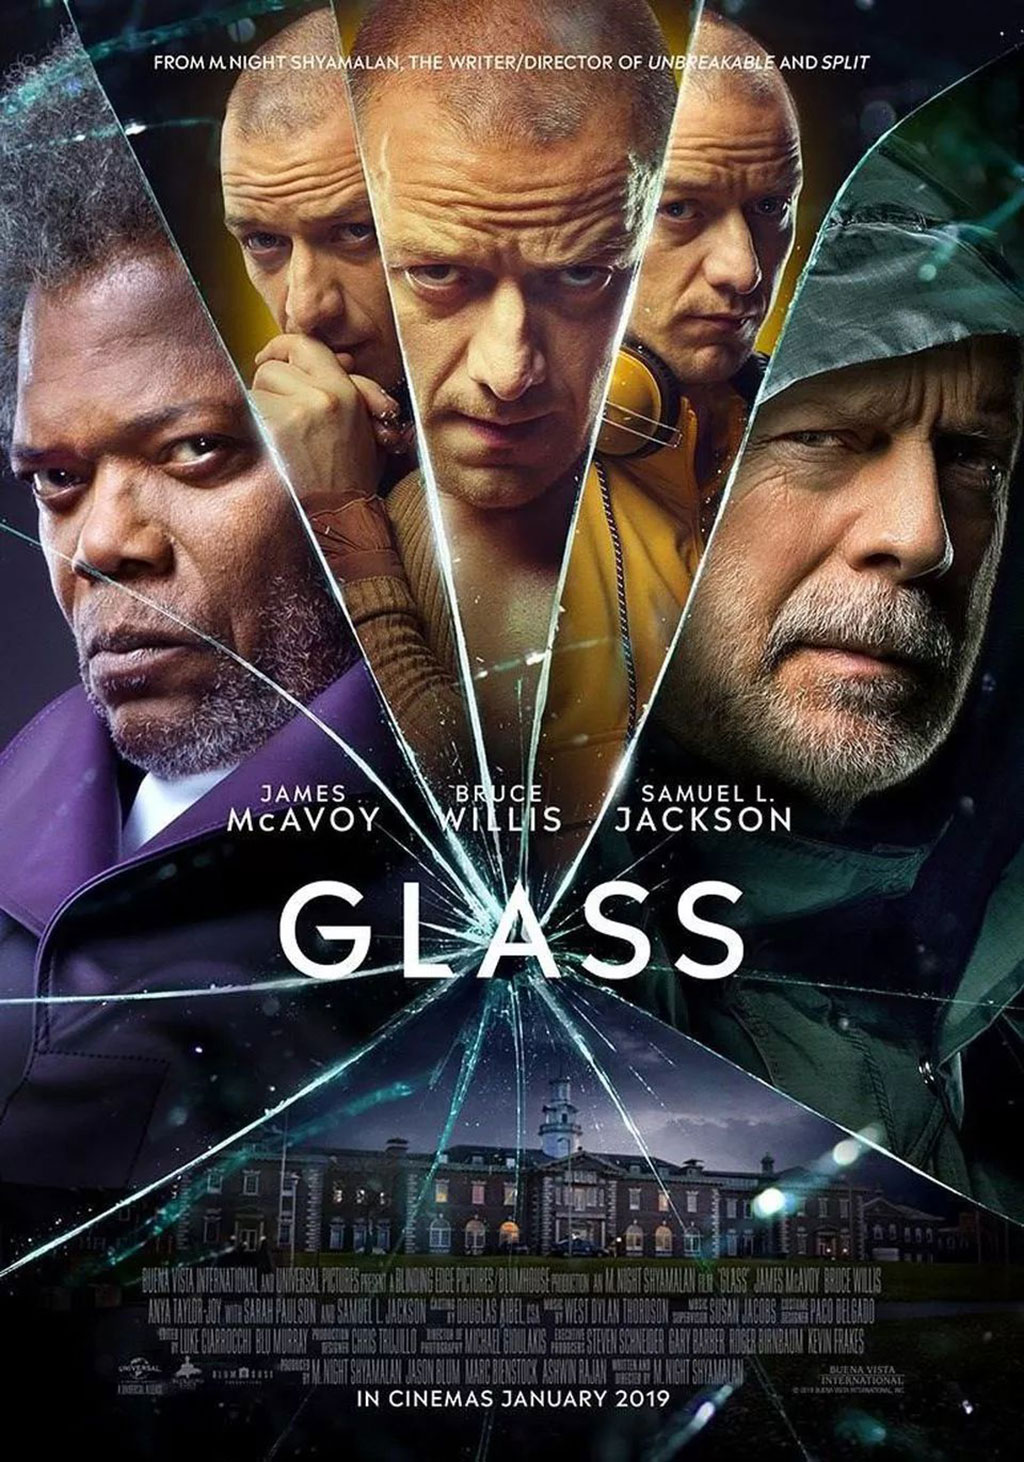  Glass của đạo diễn M. Night Shyamalan là phim kinh dị tâm lý được mong chờ trong 2019. Ảnh: Universal Pictures